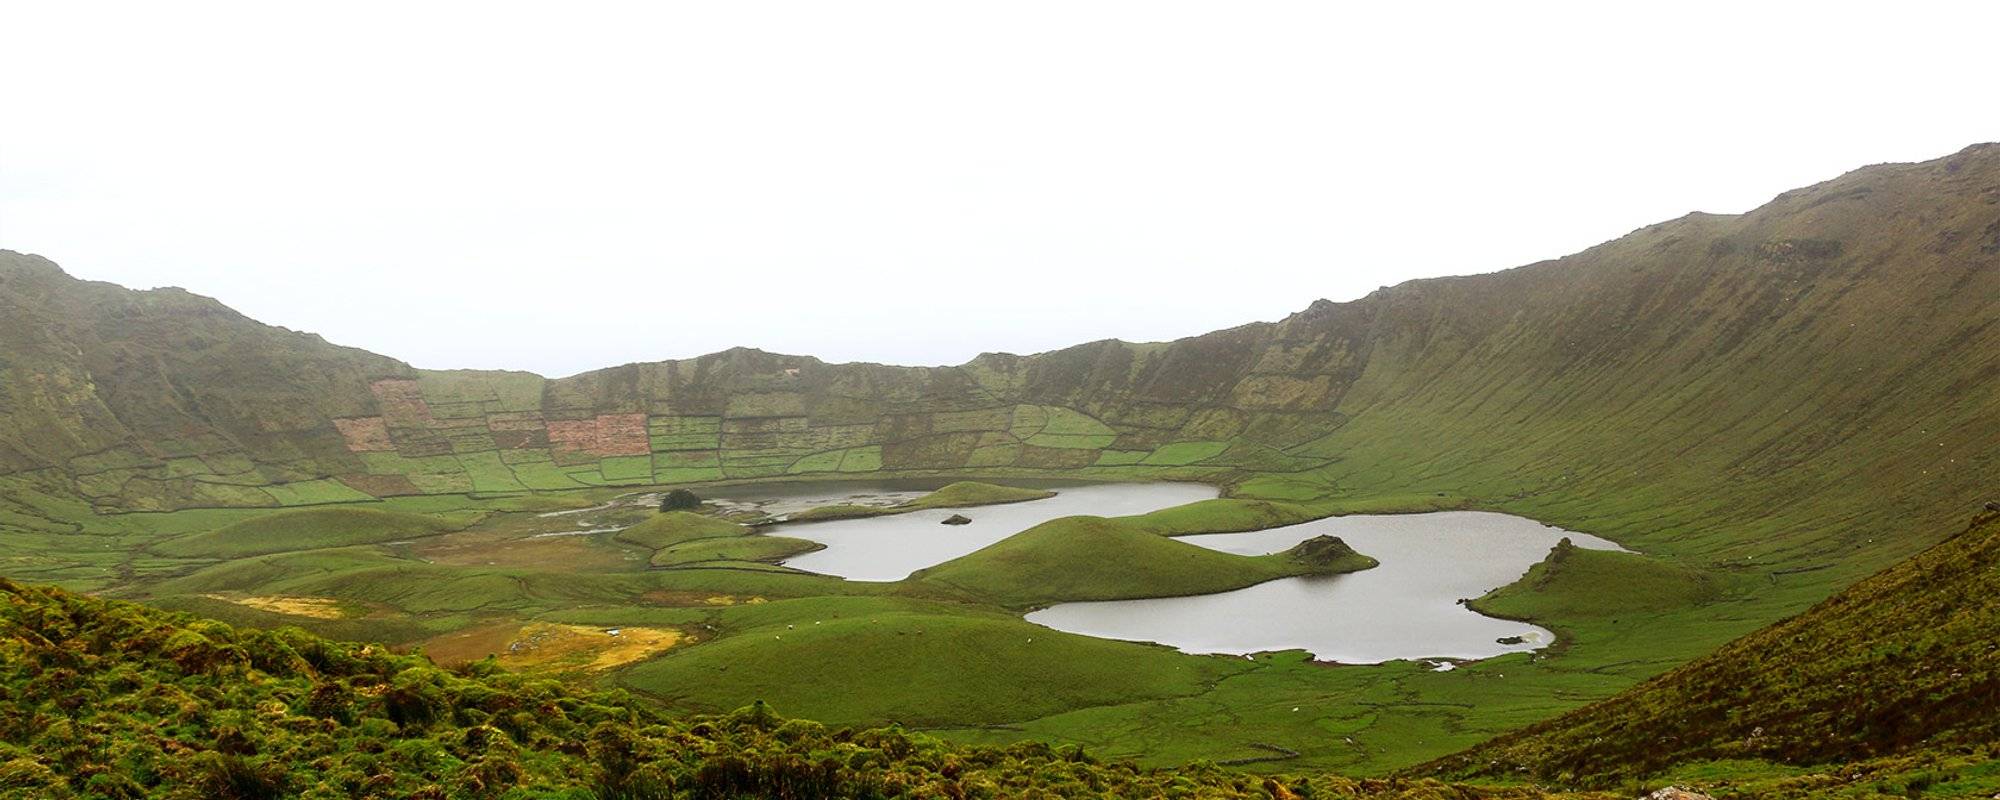 Açores #4: Voyage d'aventure à l'île de Corvo, une île de 300 habitants